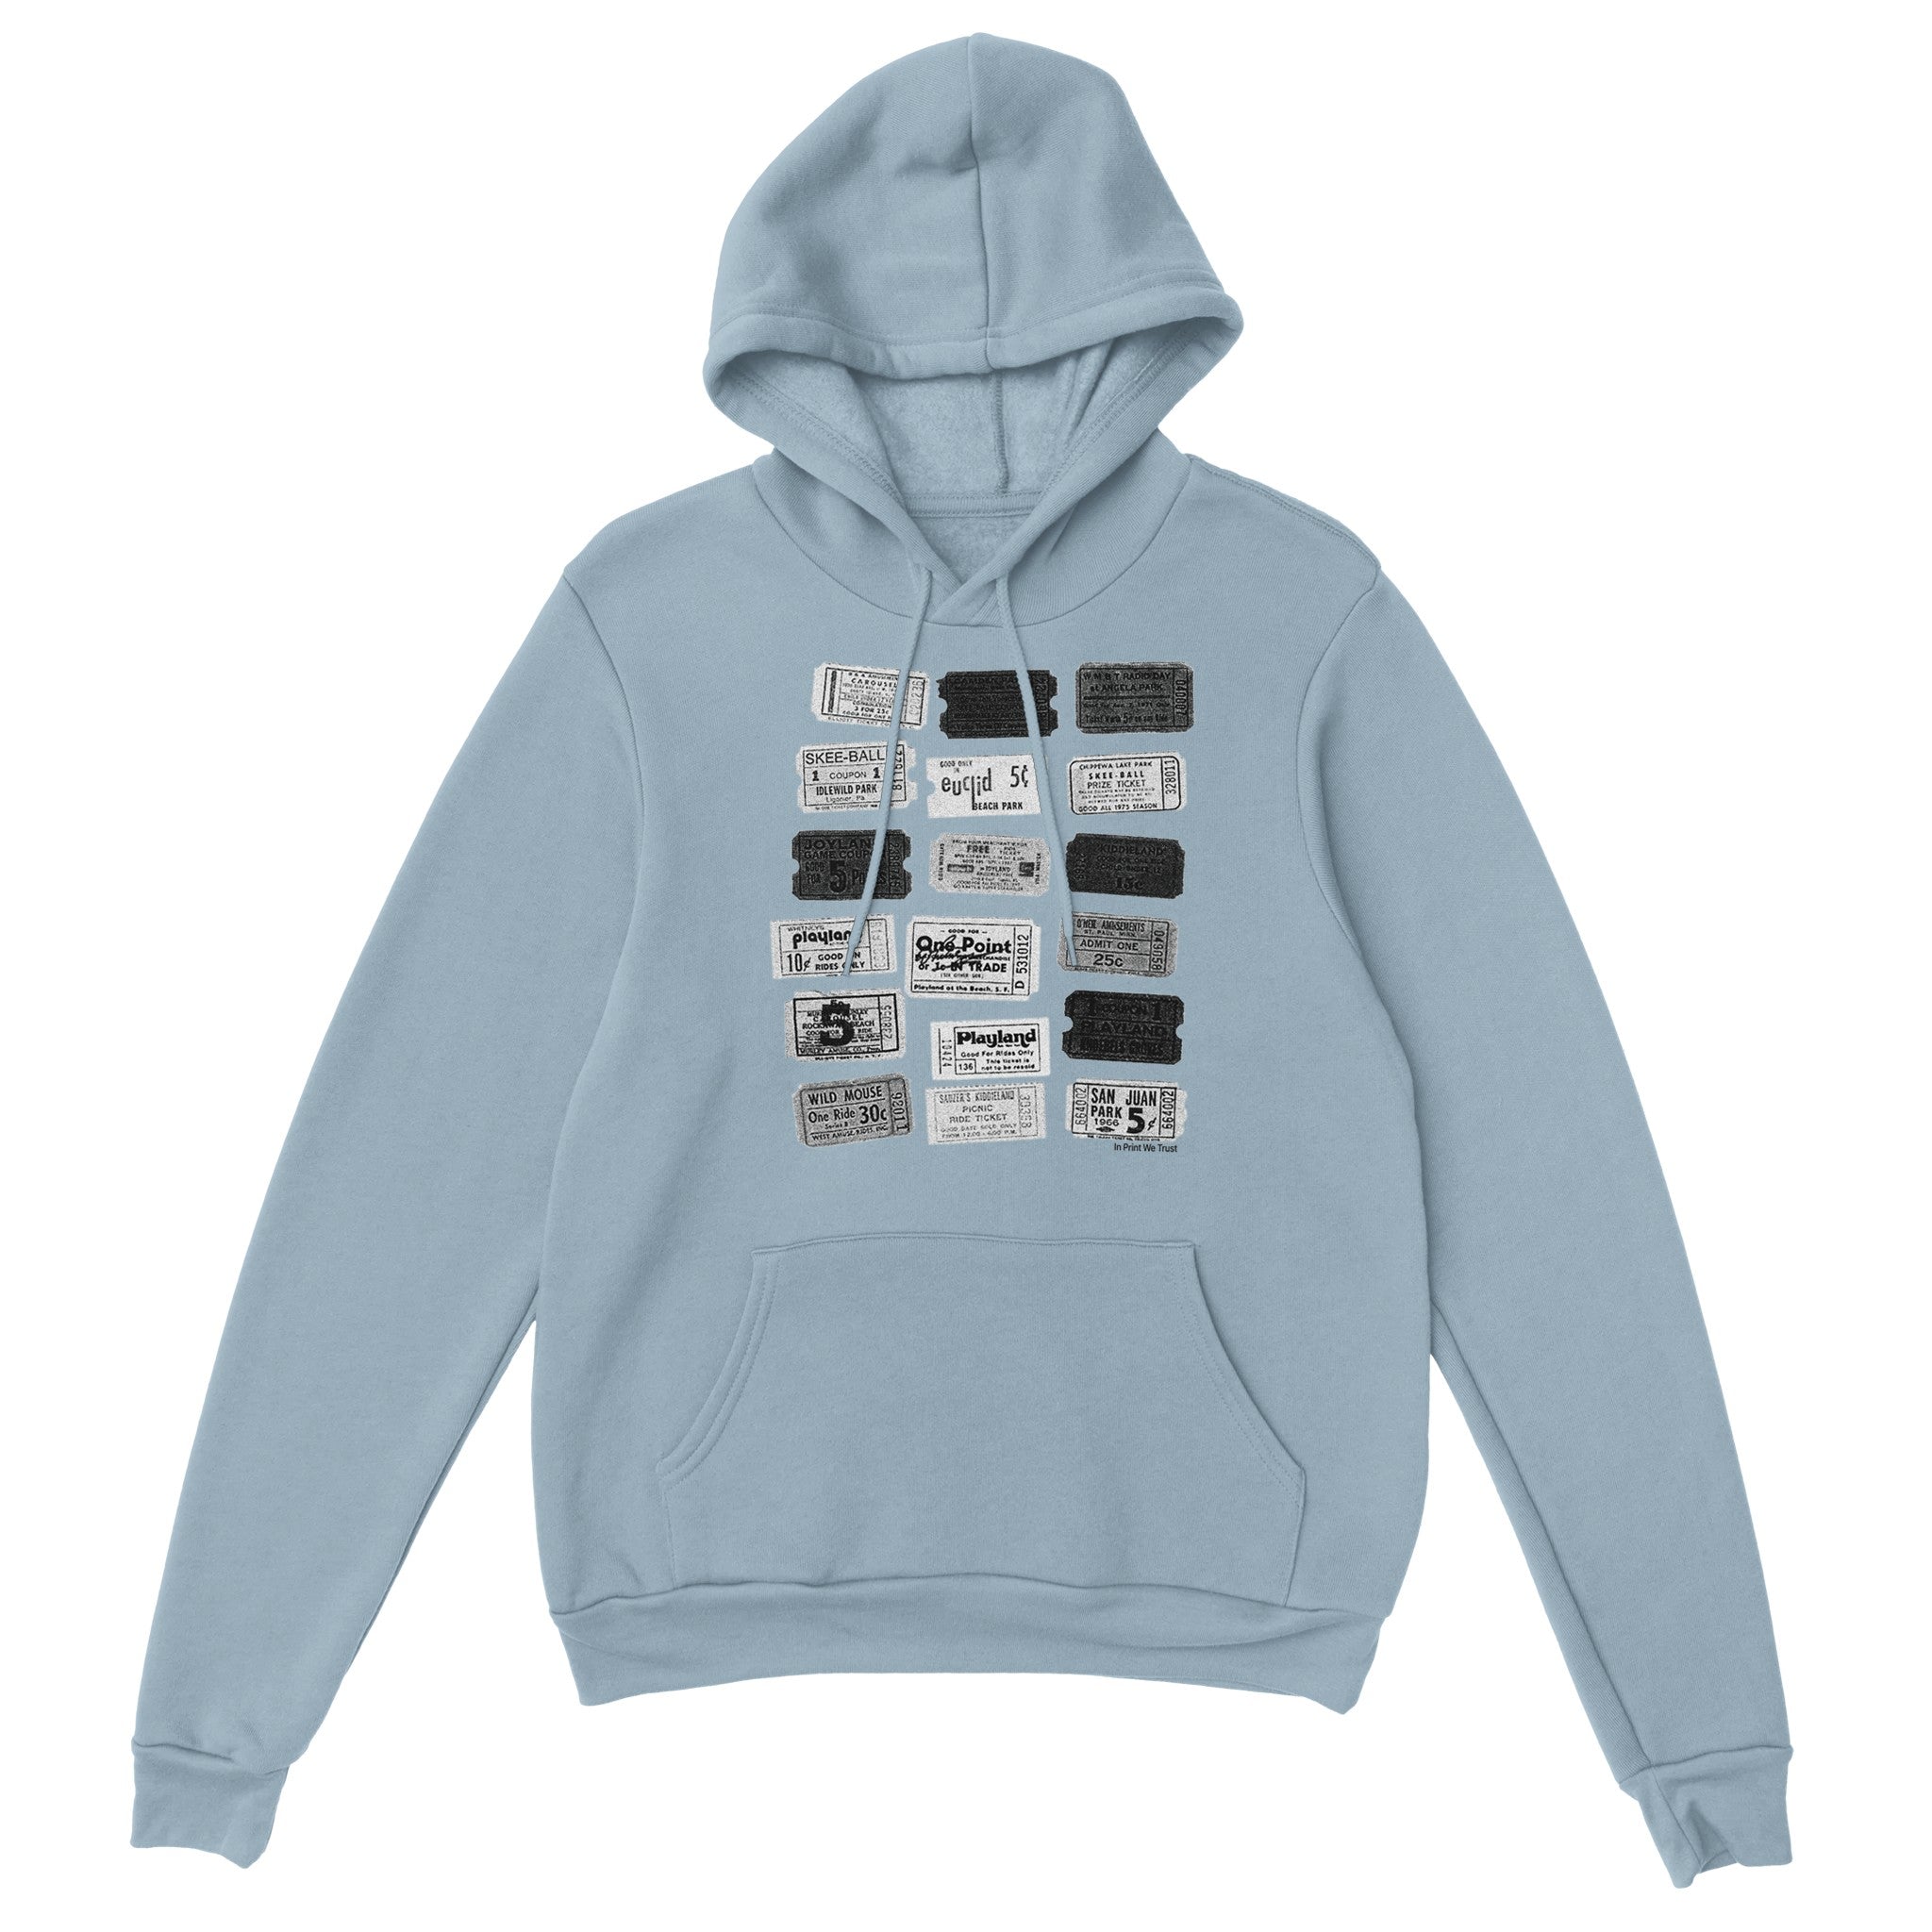 'One-Way Ticket' hoodie - In Print We Trust